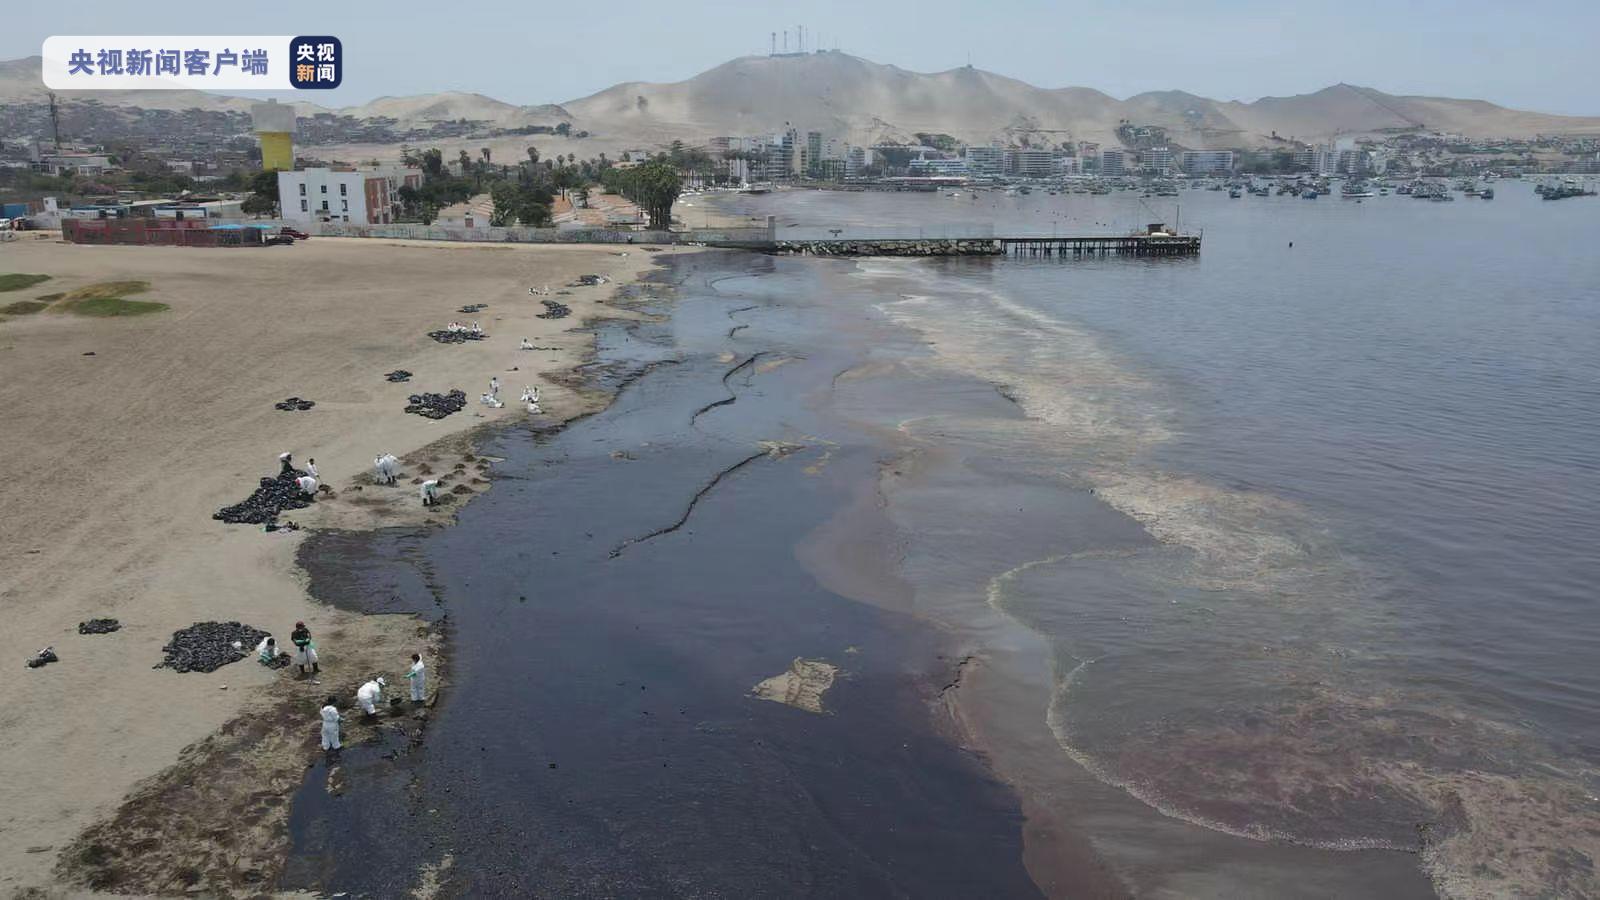 秘鲁被泄漏原油污染海陆面积近900公顷 旅游业遭重创